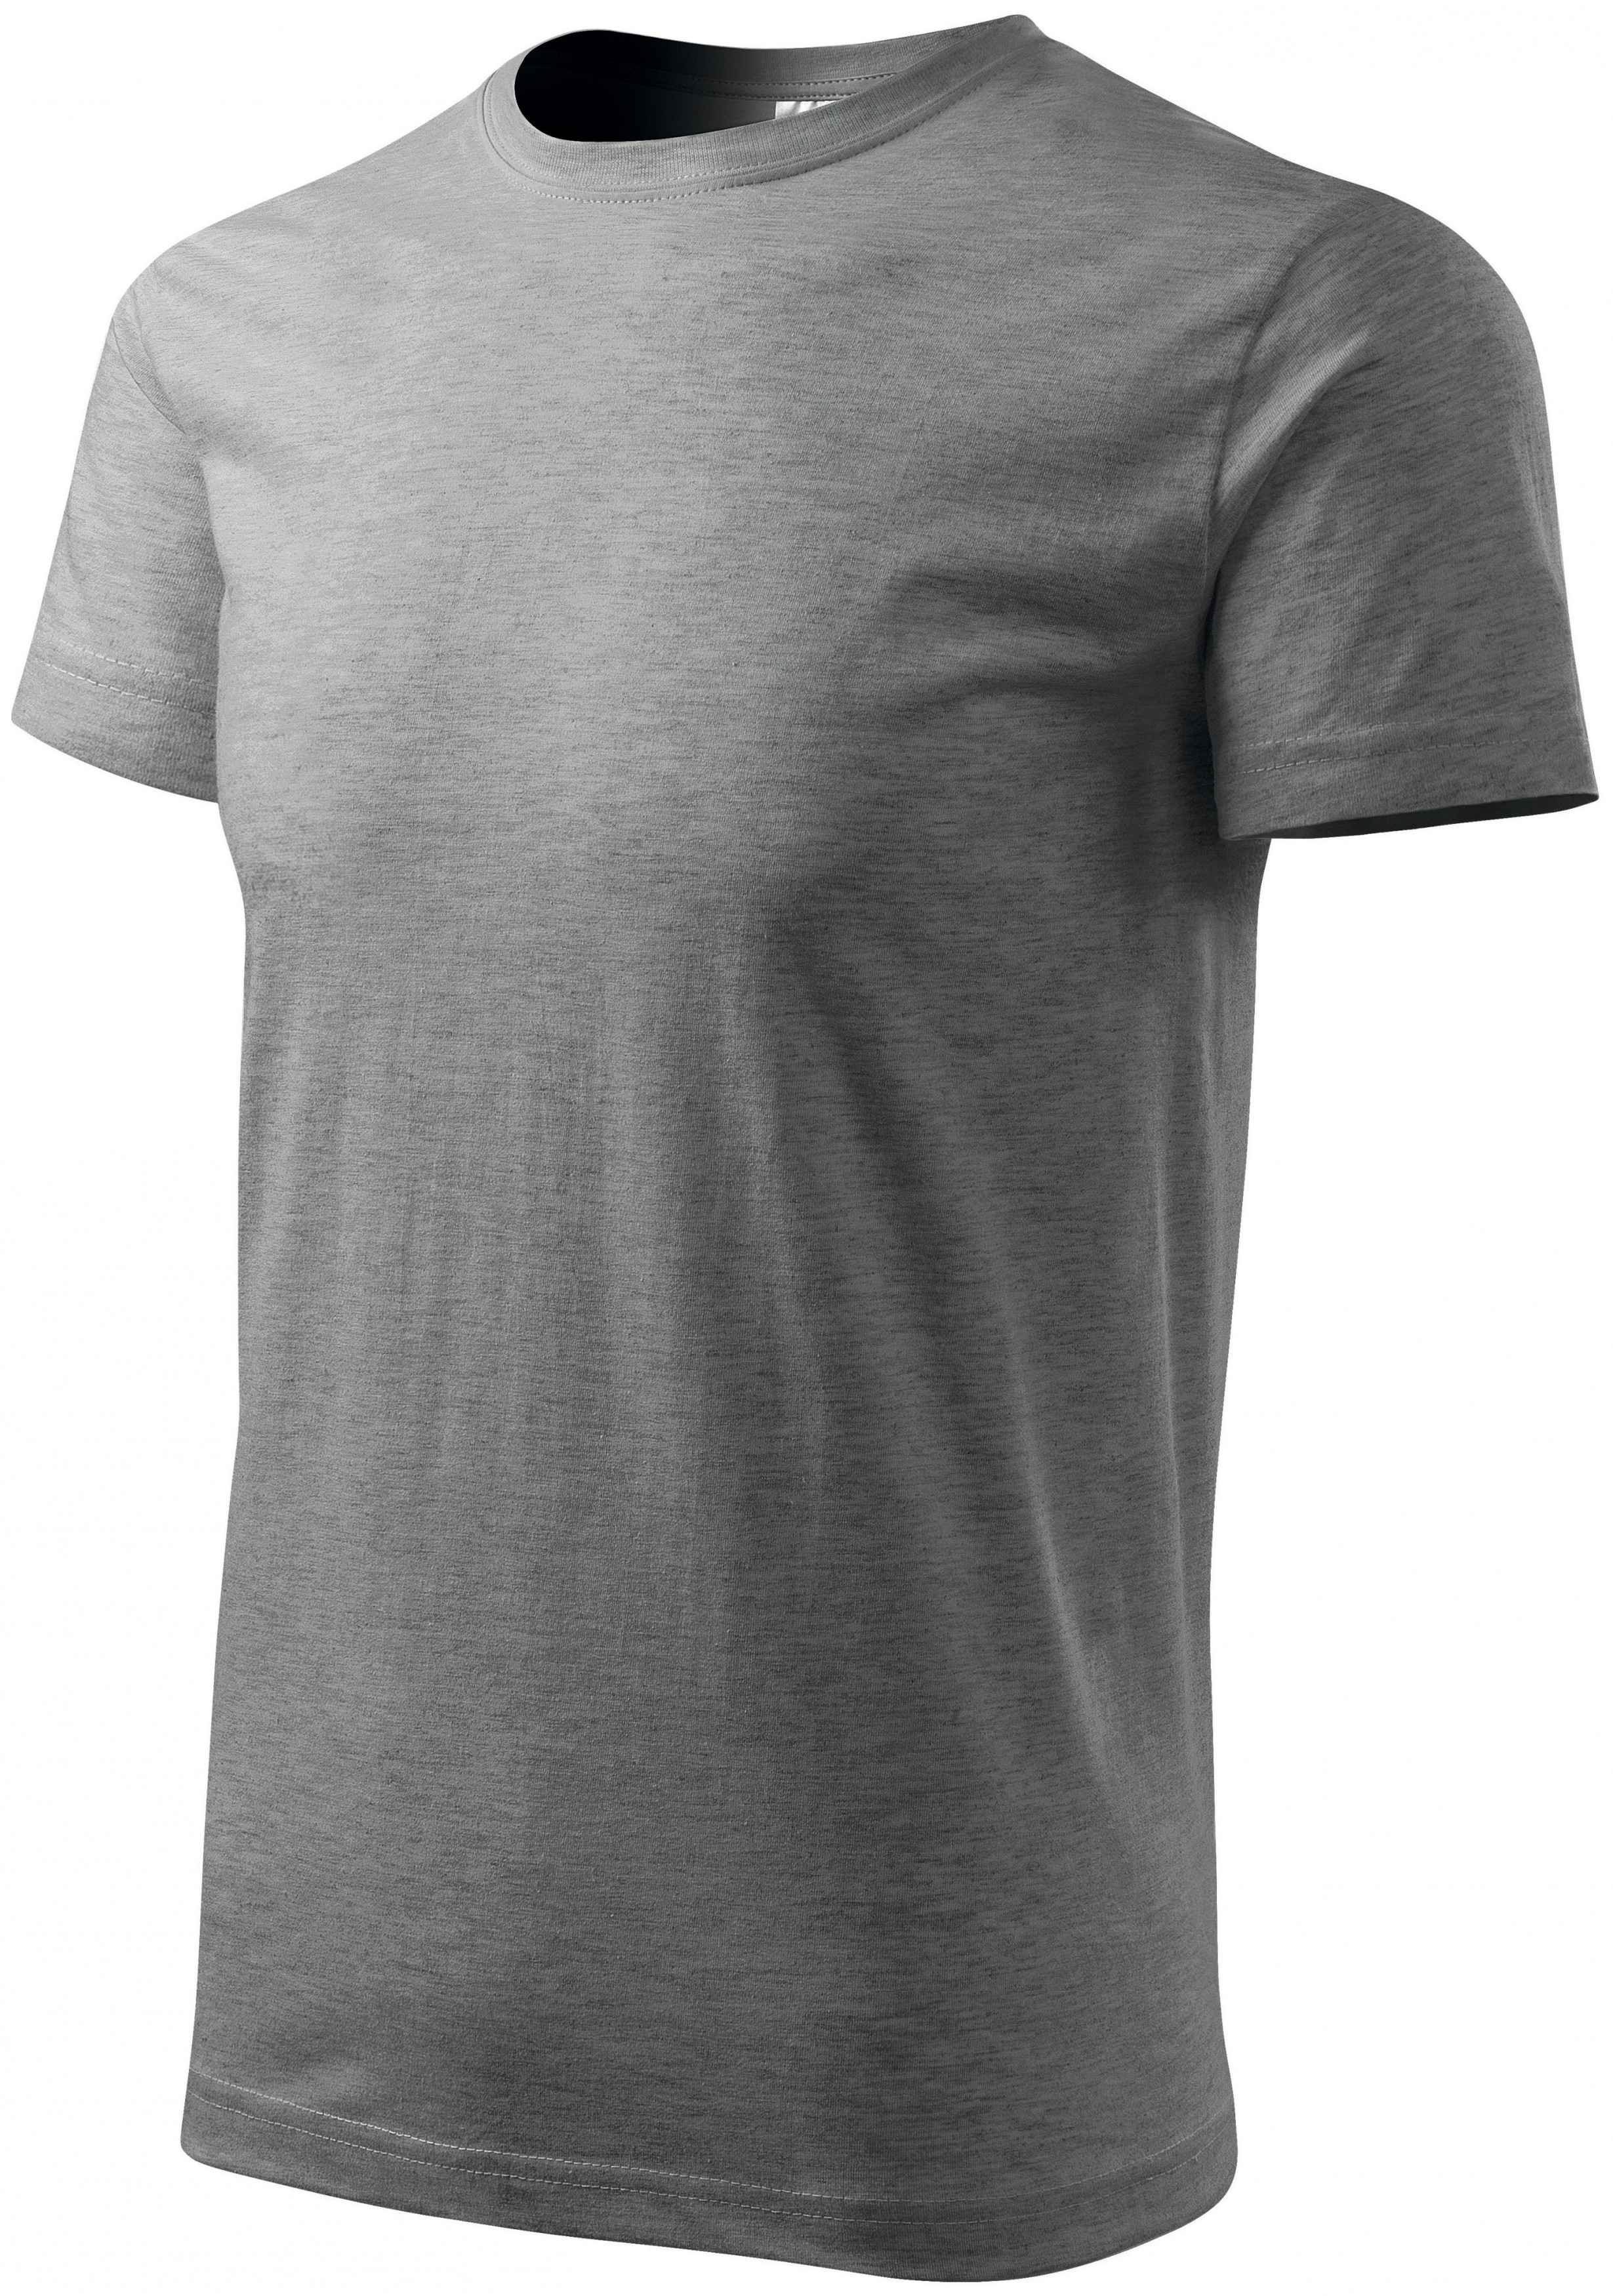 Pánske tričko jednoduché, tmavosivý melír, 2XL